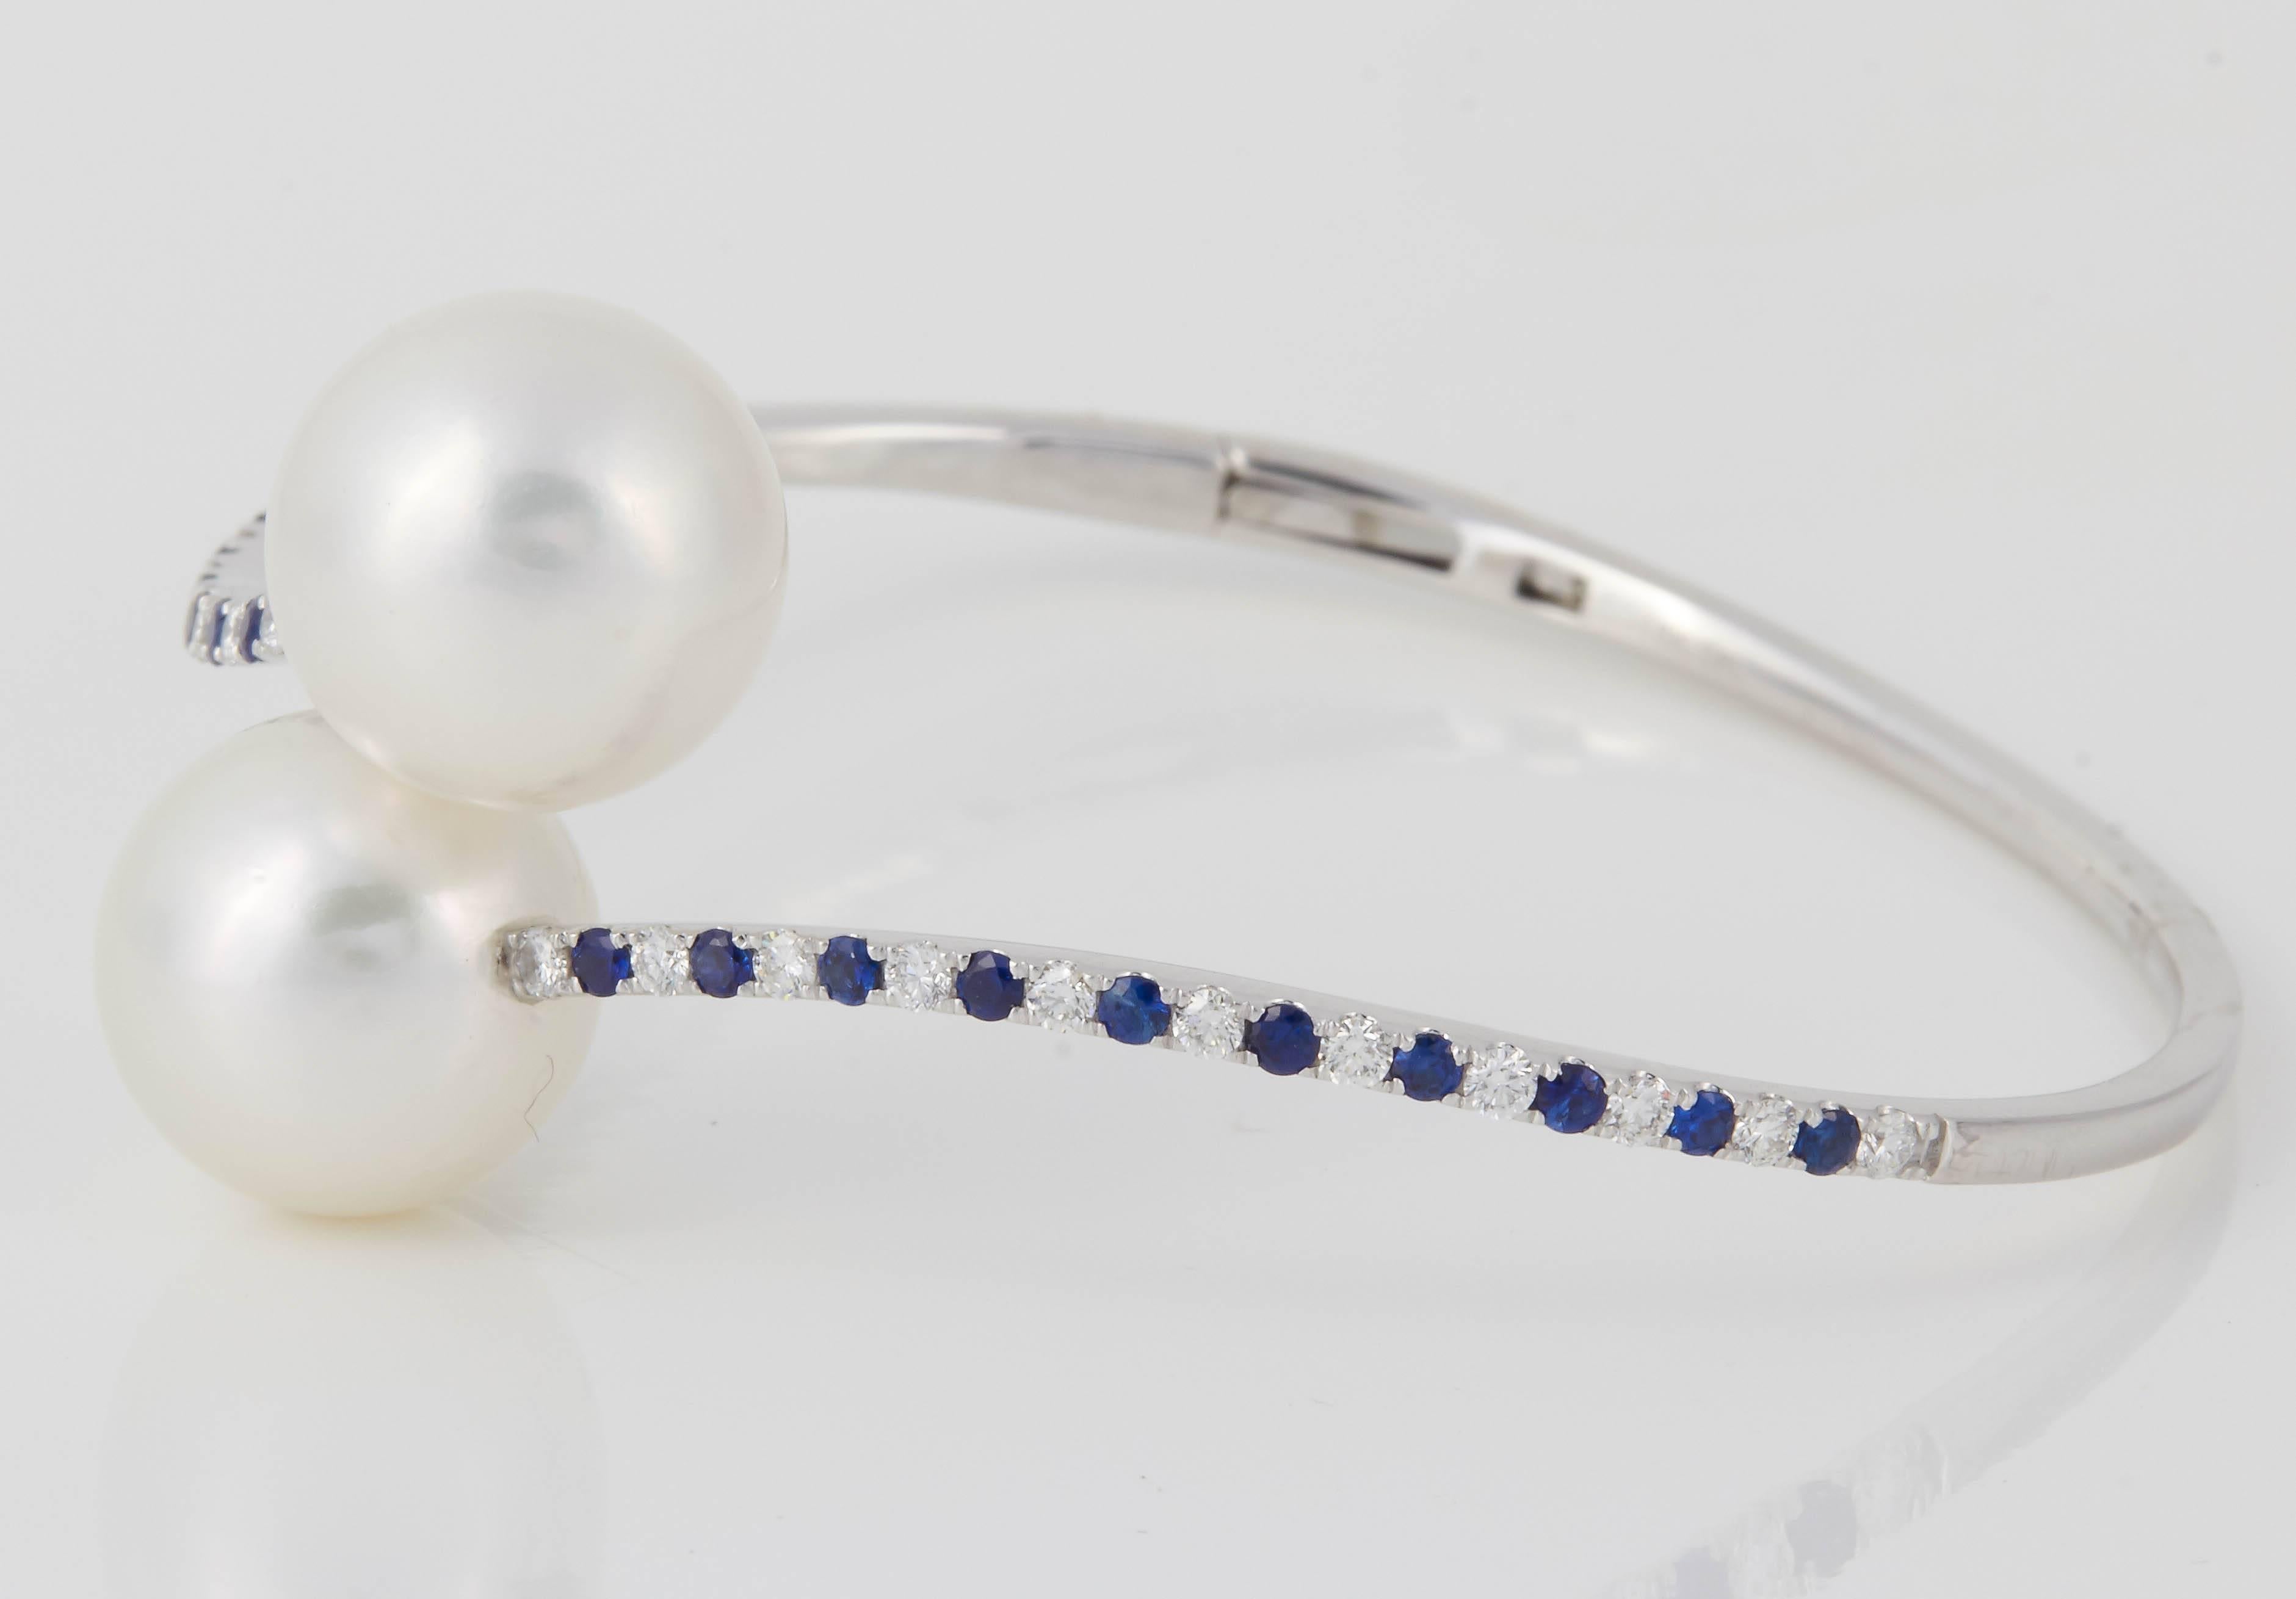 bracelet bangle en or blanc 18 carats avec deux perles des mers du Sud mesurant 13 mm, flanquées de saphirs pesant 0.55 carats et de diamants pesant 0.55 carats.
8.5 grammes
Couleur G-H
Clarity SI

Les perles peuvent être changées en roses,